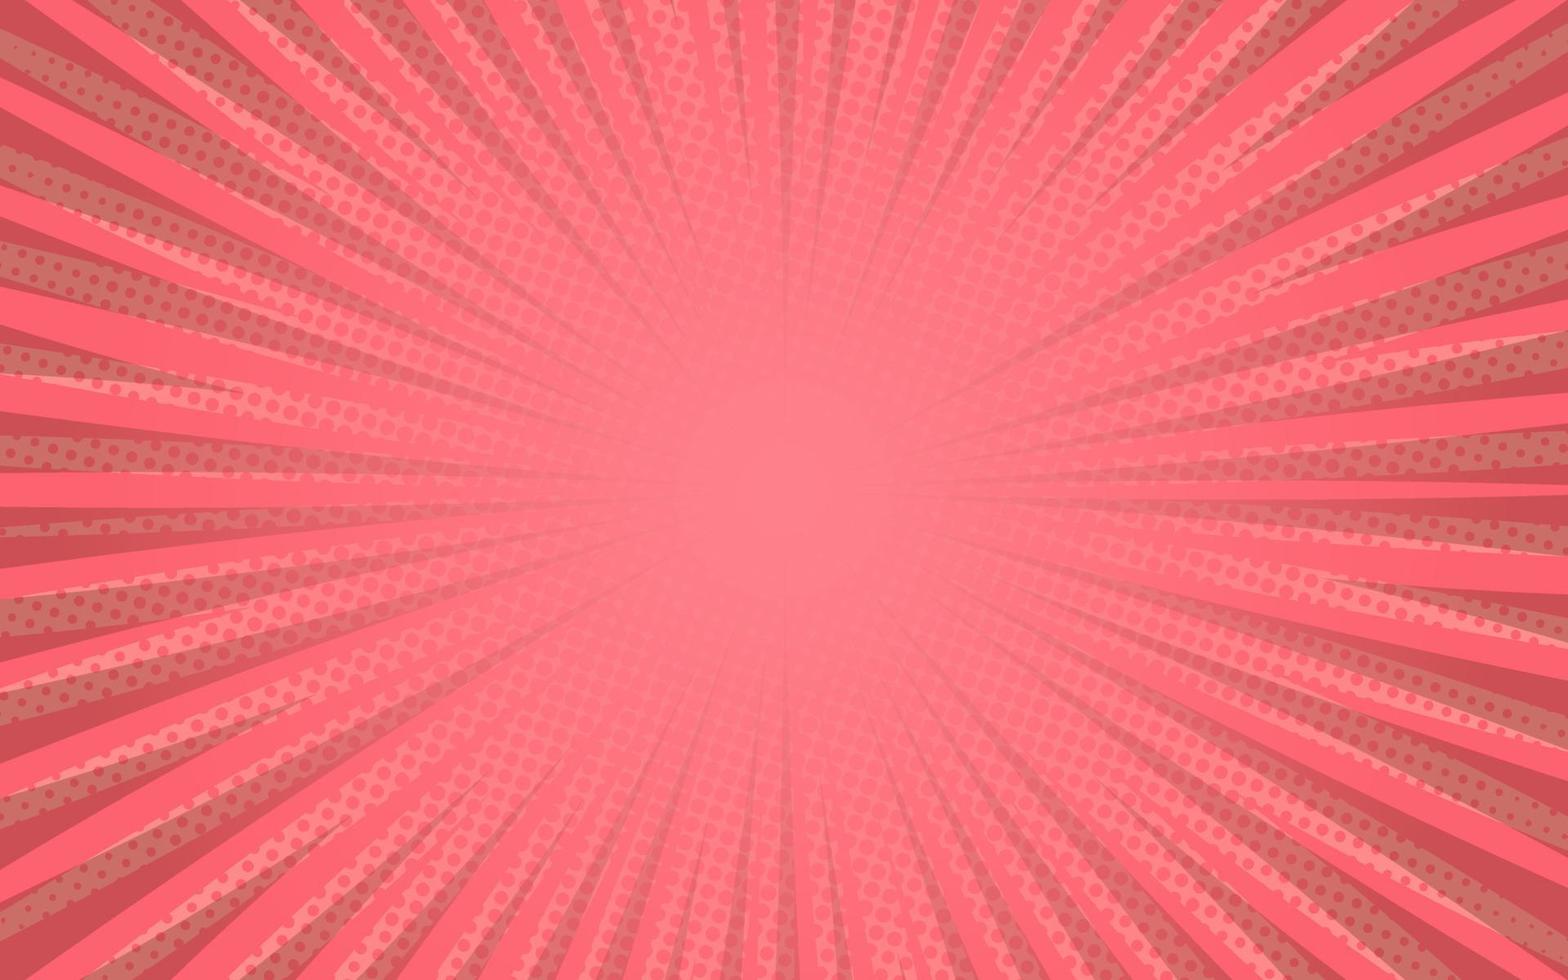 rayos de sol estilo retro vintage sobre fondo rosa, patrón cómico con estallido y medio tono. efecto de explosión de sol retro de dibujos animados con puntos. rayos ilustración de vector de banner de verano